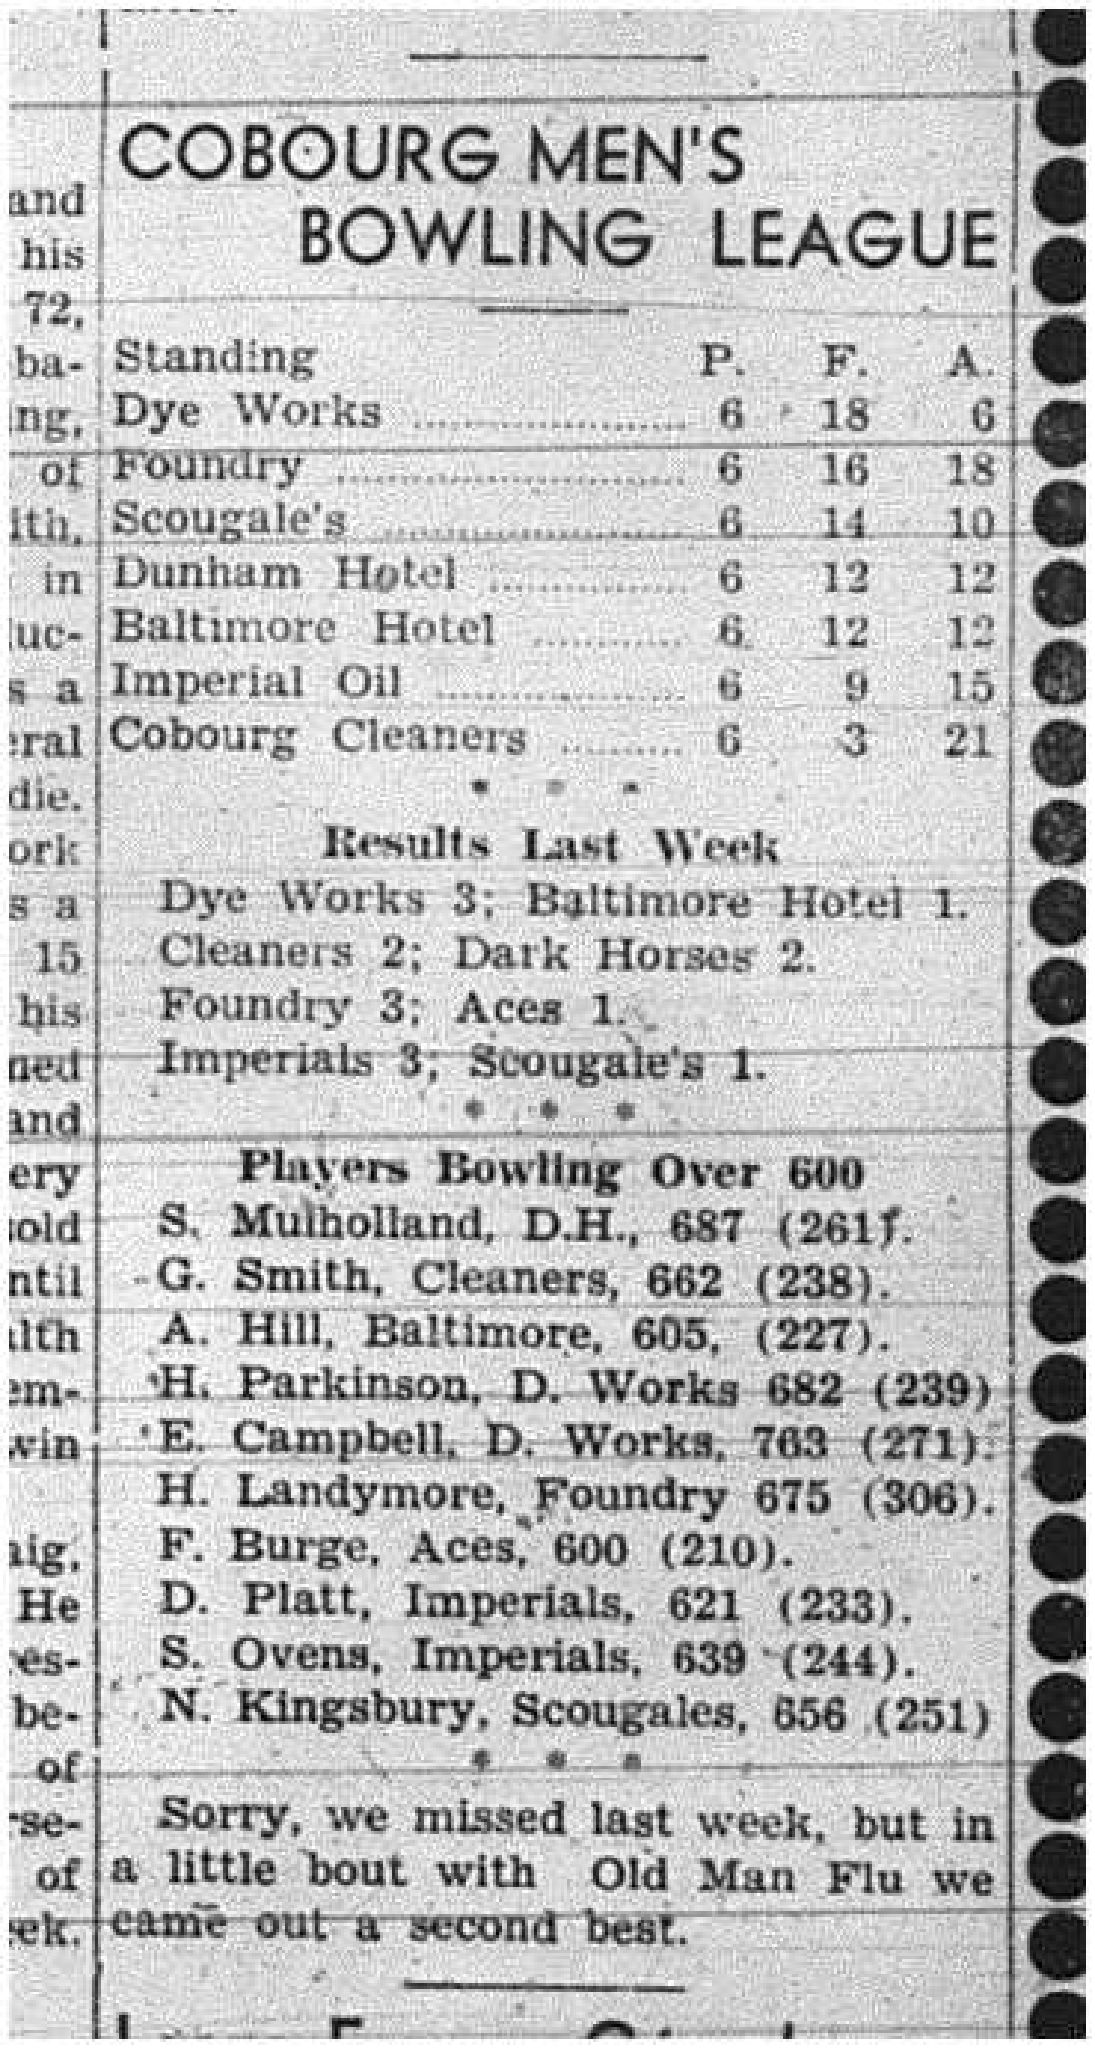 1943-12-16 Bowling - Men